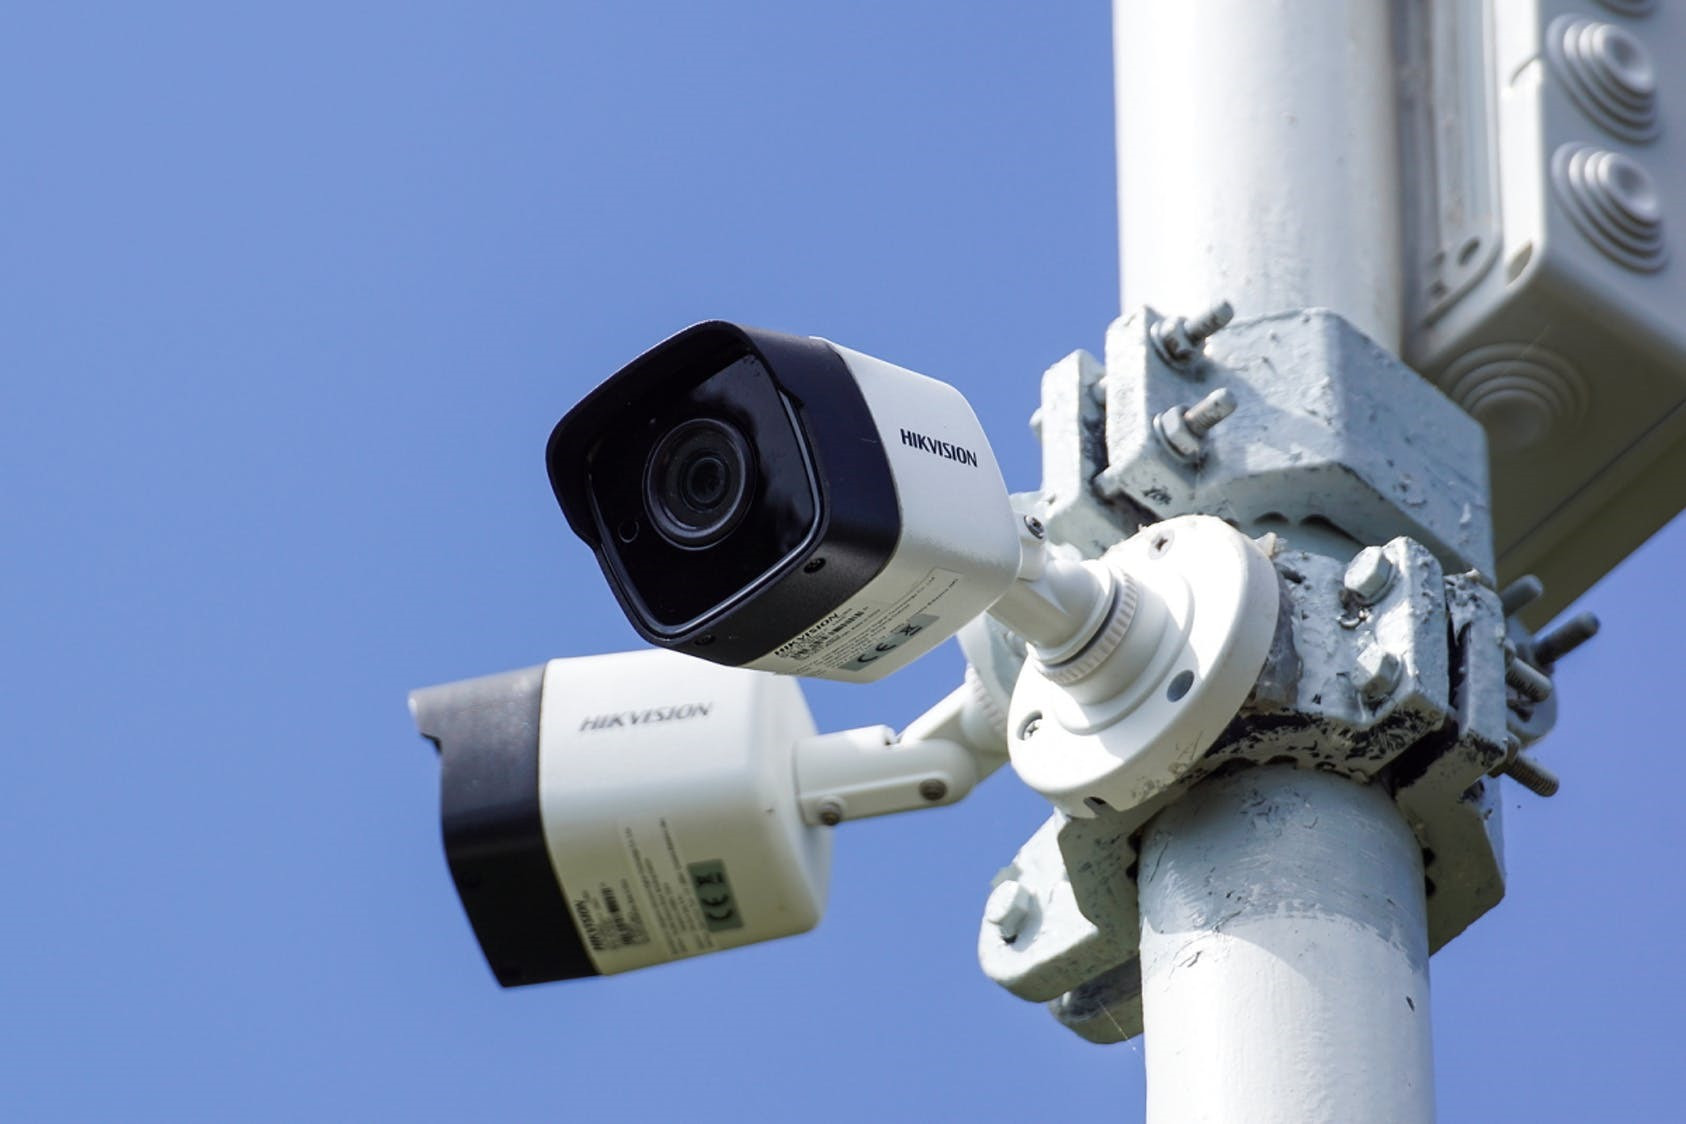 Hơn 70 mẫu camera của hãng Hikvision gặp lỗ hổng bảo mật nghiêm trọng. Ảnh: bigstock